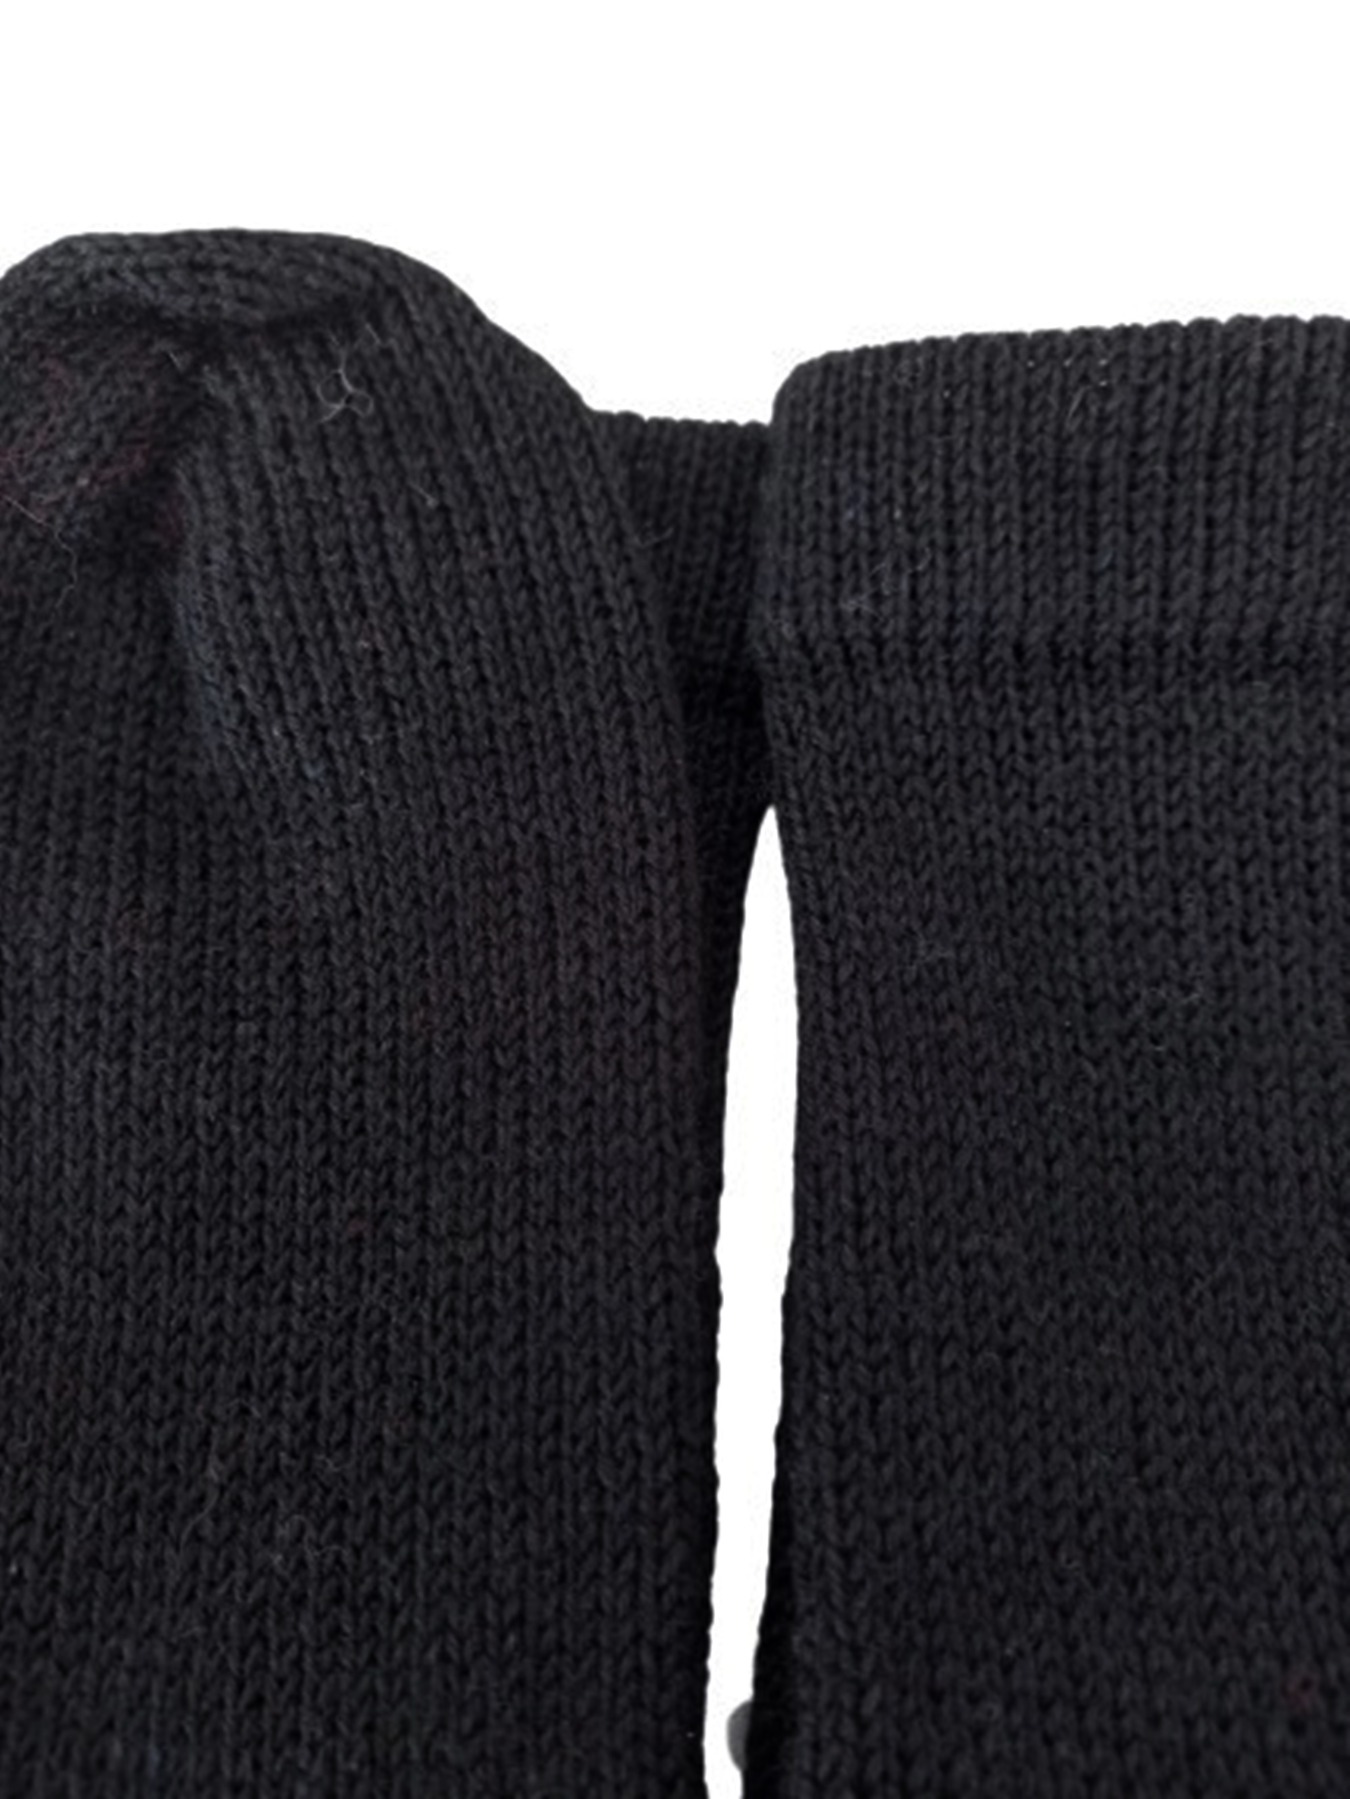 Größe 37 - Socken in klassischem Schwarz 3